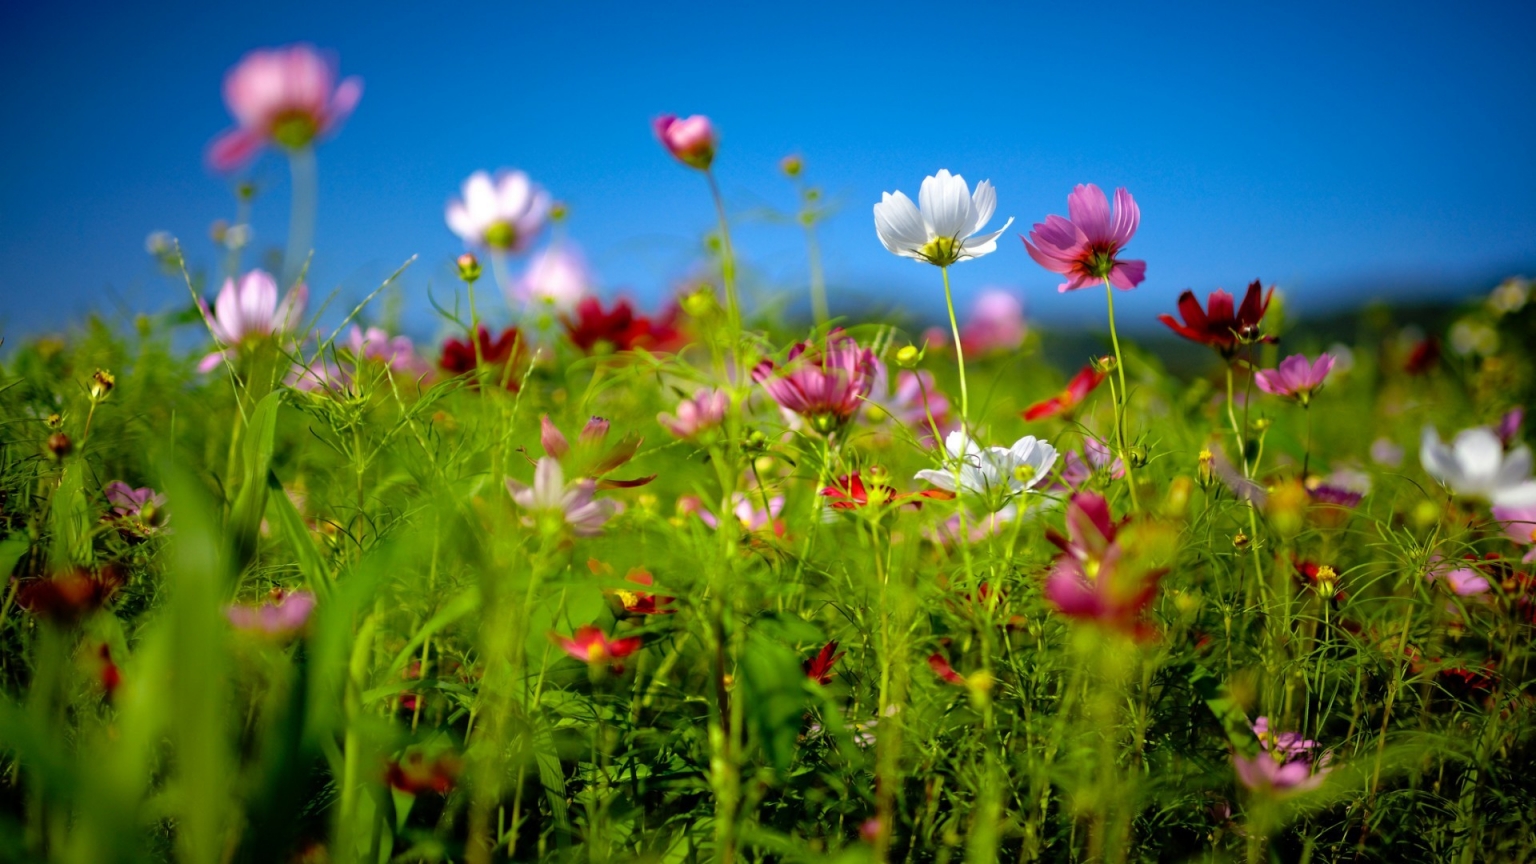 Spring Flower Land for 1536 x 864 HDTV resolution